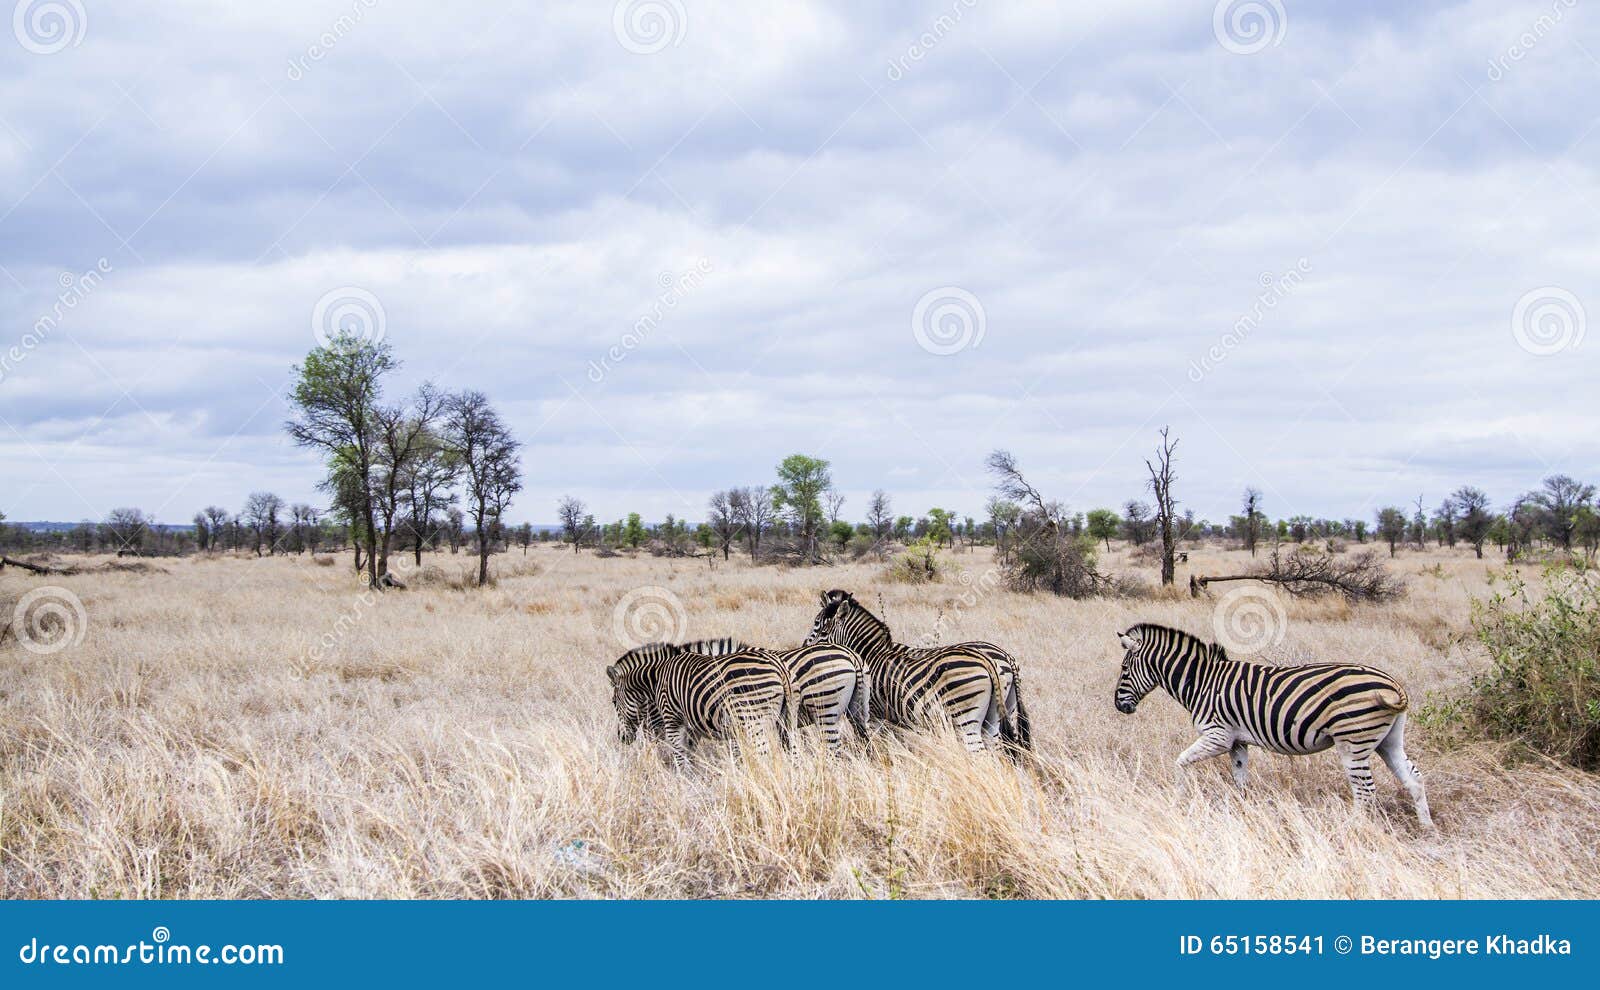 plains zebra in kruger national park